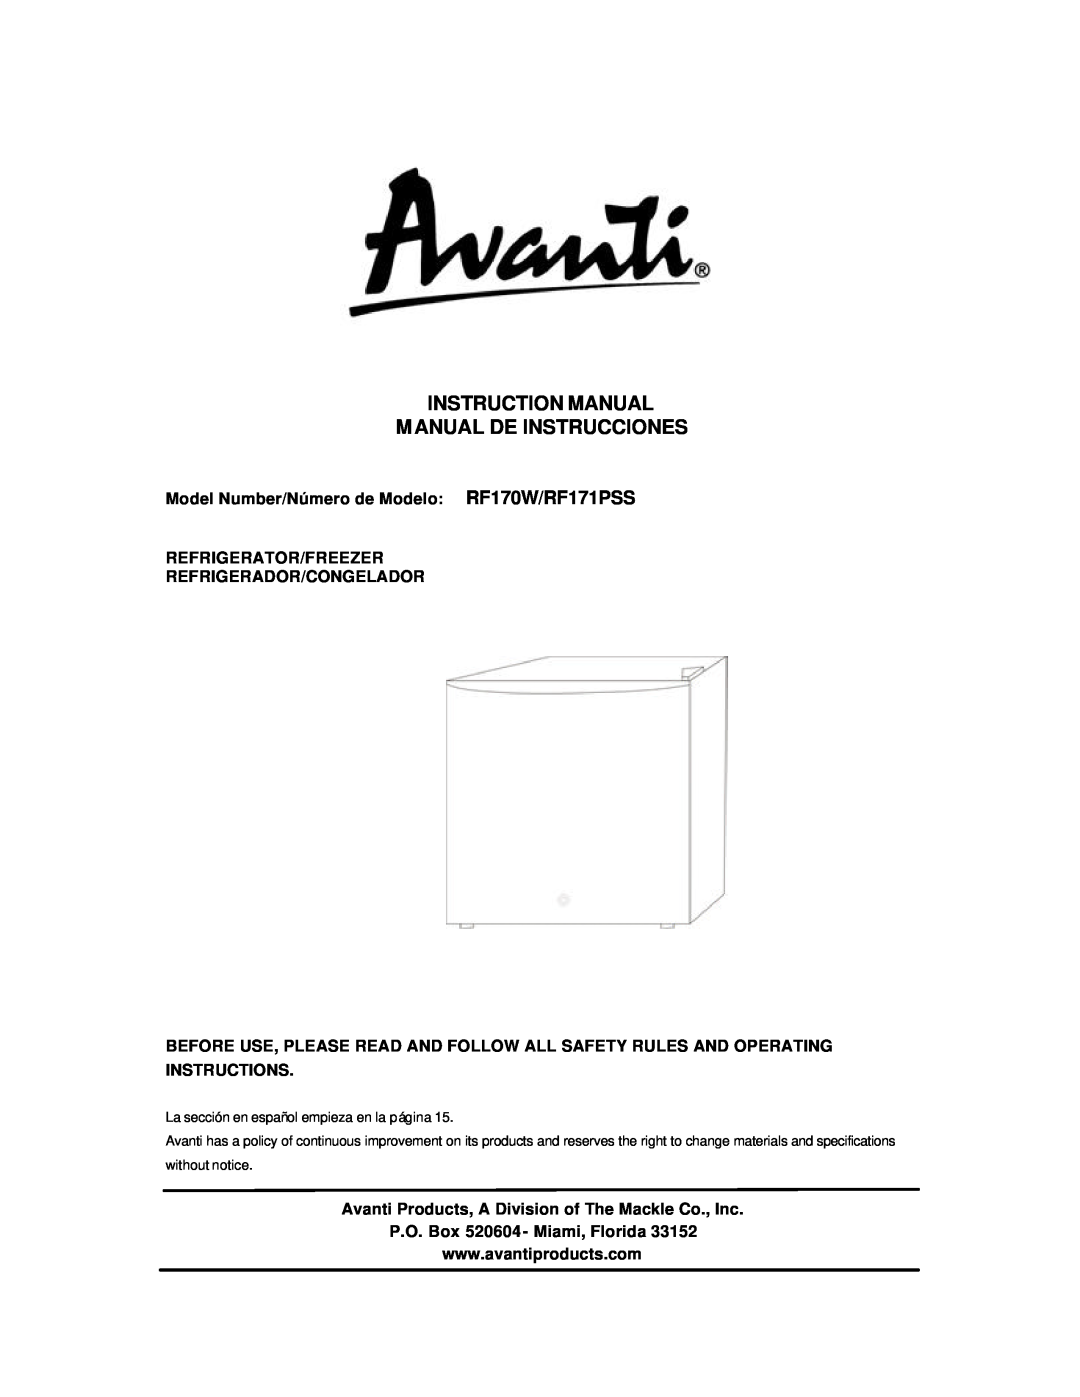 Avanti instruction manual Model Number/Número de Modelo RF170W/RF171PSS, Refrigerator/Freezer Refrigerador/Congelador 